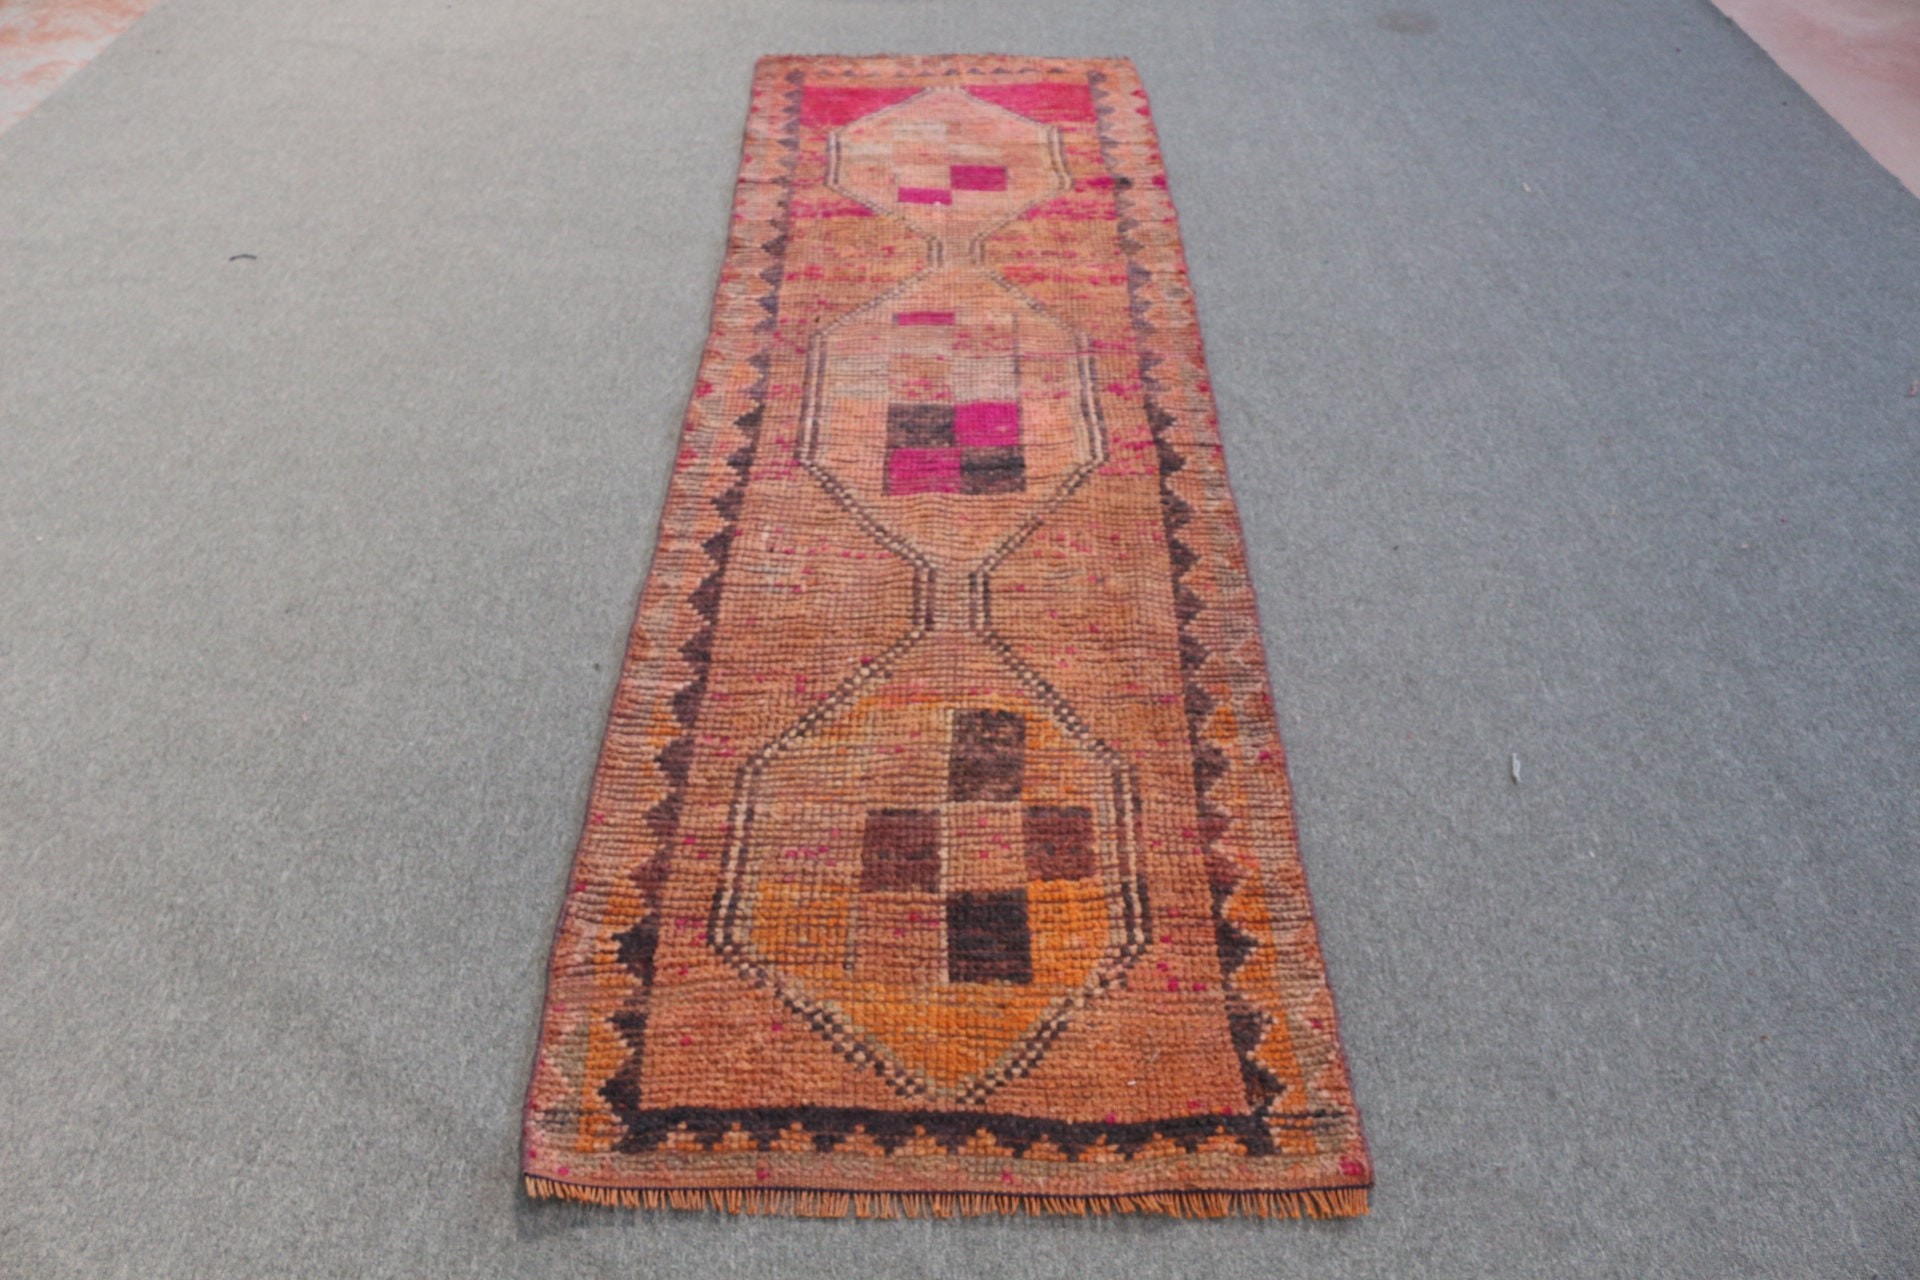 Orange Antique Rugs, Corridor Rugs, Vintage Rug, Bedroom Rugs, Rugs for Hallway, Turkish Rug, Anatolian Rug, 2.6x9.1 ft Runner Rugs